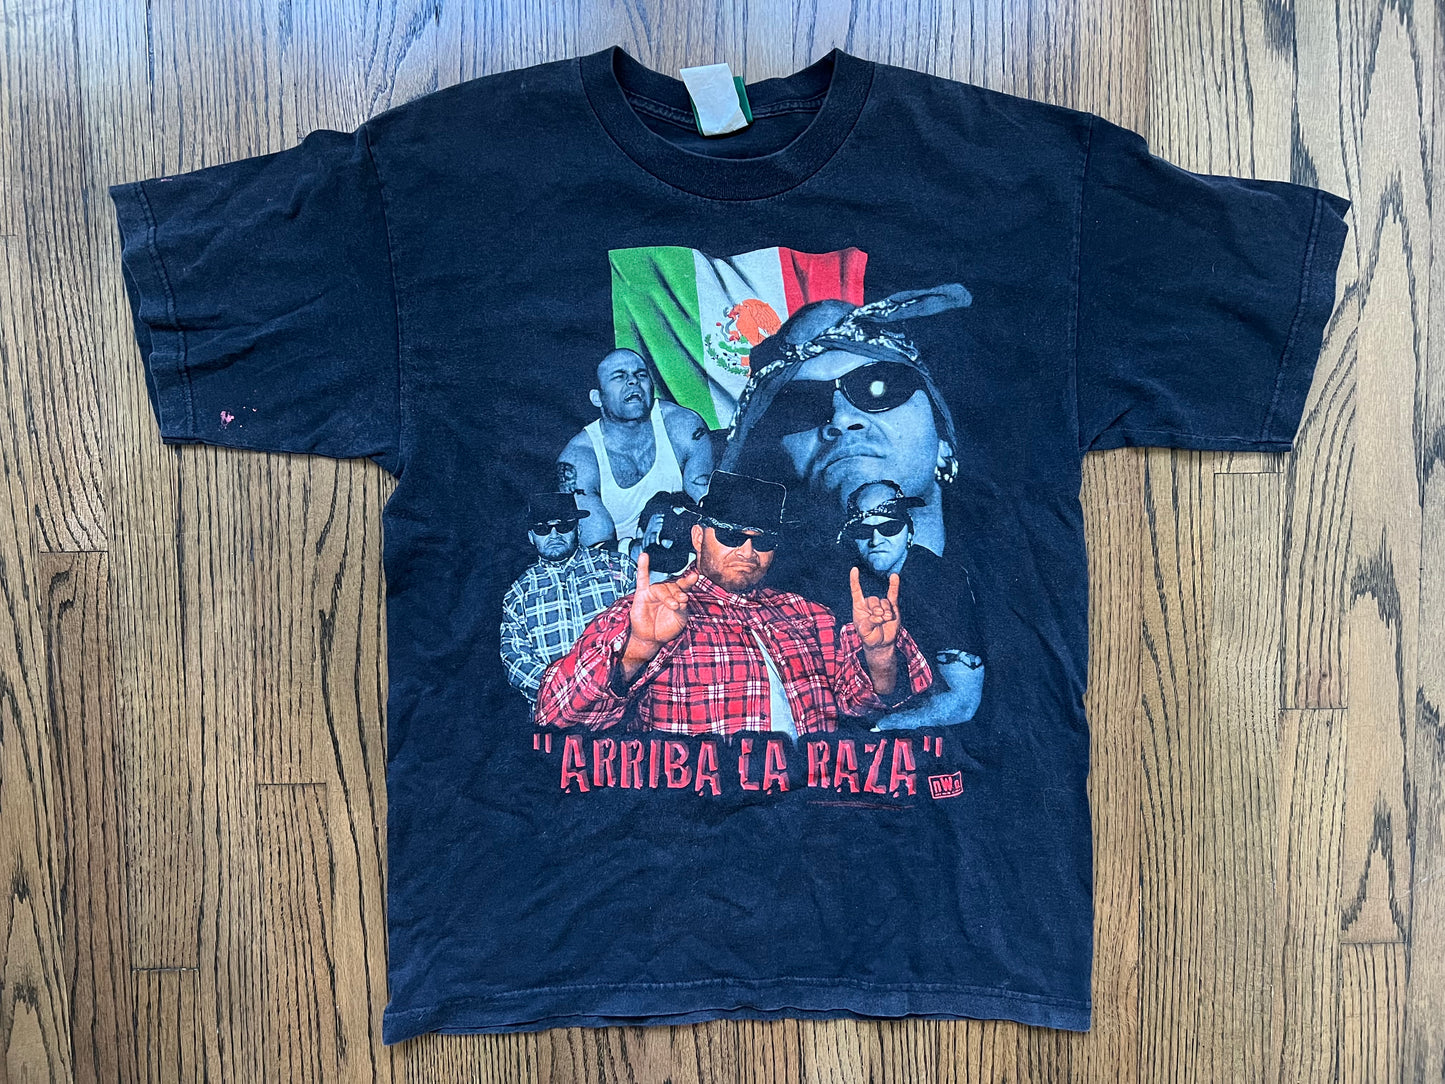 1998 WCW / n.W.o. Konnan “Arriba La Raza” shirt